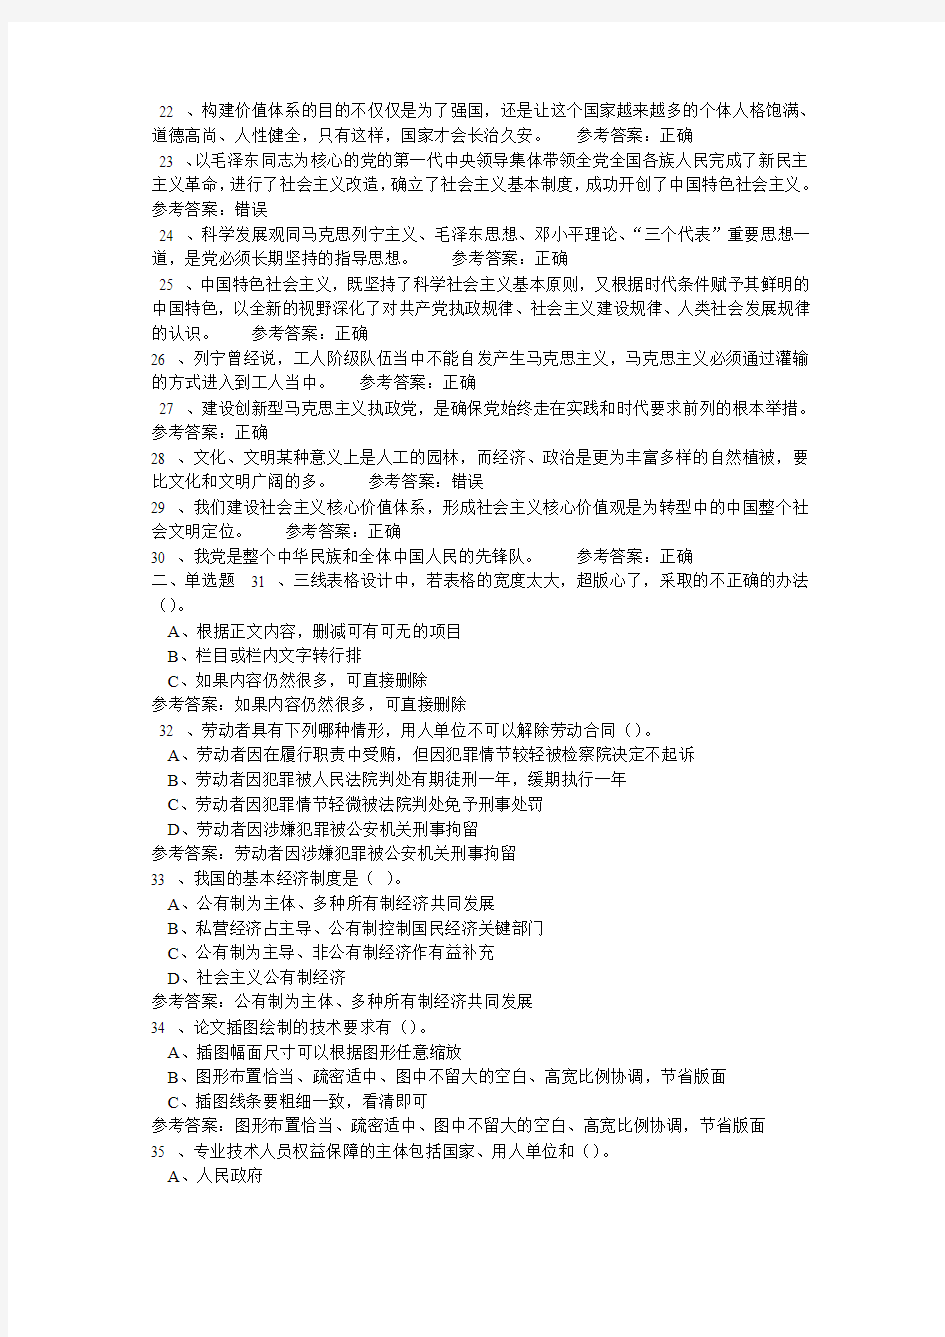 2013年郑州专业技术人员继续教育公需课考试题库及答案修改